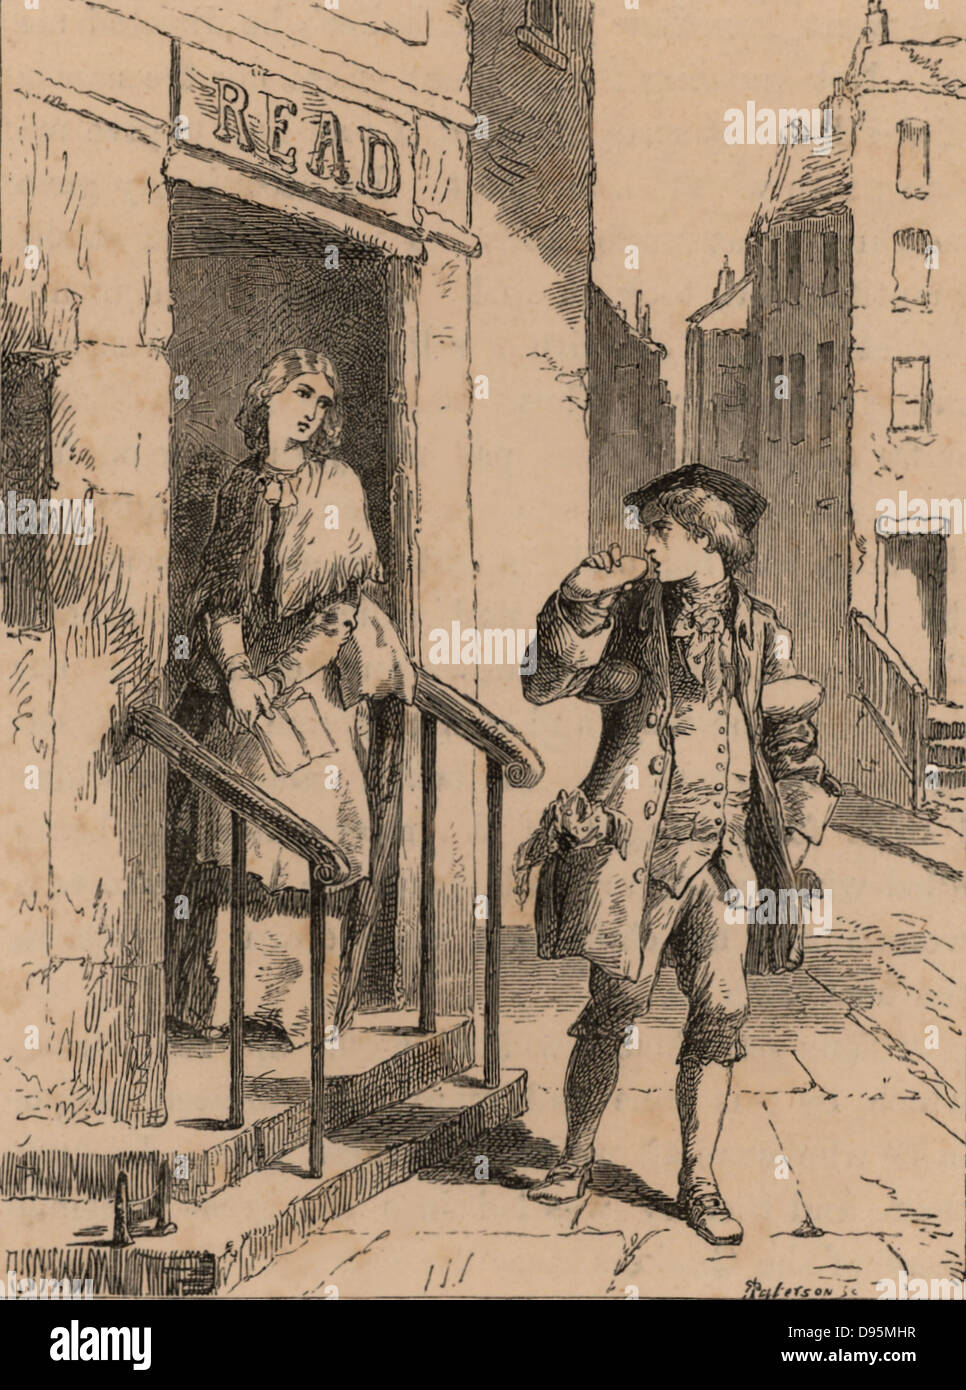 Benjamin Franklin (1706-1790), scientifique américain et homme d'état de l'imprimante. L'arrivée de Franklin à Philadelphie en 1723 et passant la porte de son futur beau-père et de voir Deborah Lire qui devait être sa femme. La gravure, Londres 1852. La gravure sur bois. Banque D'Images